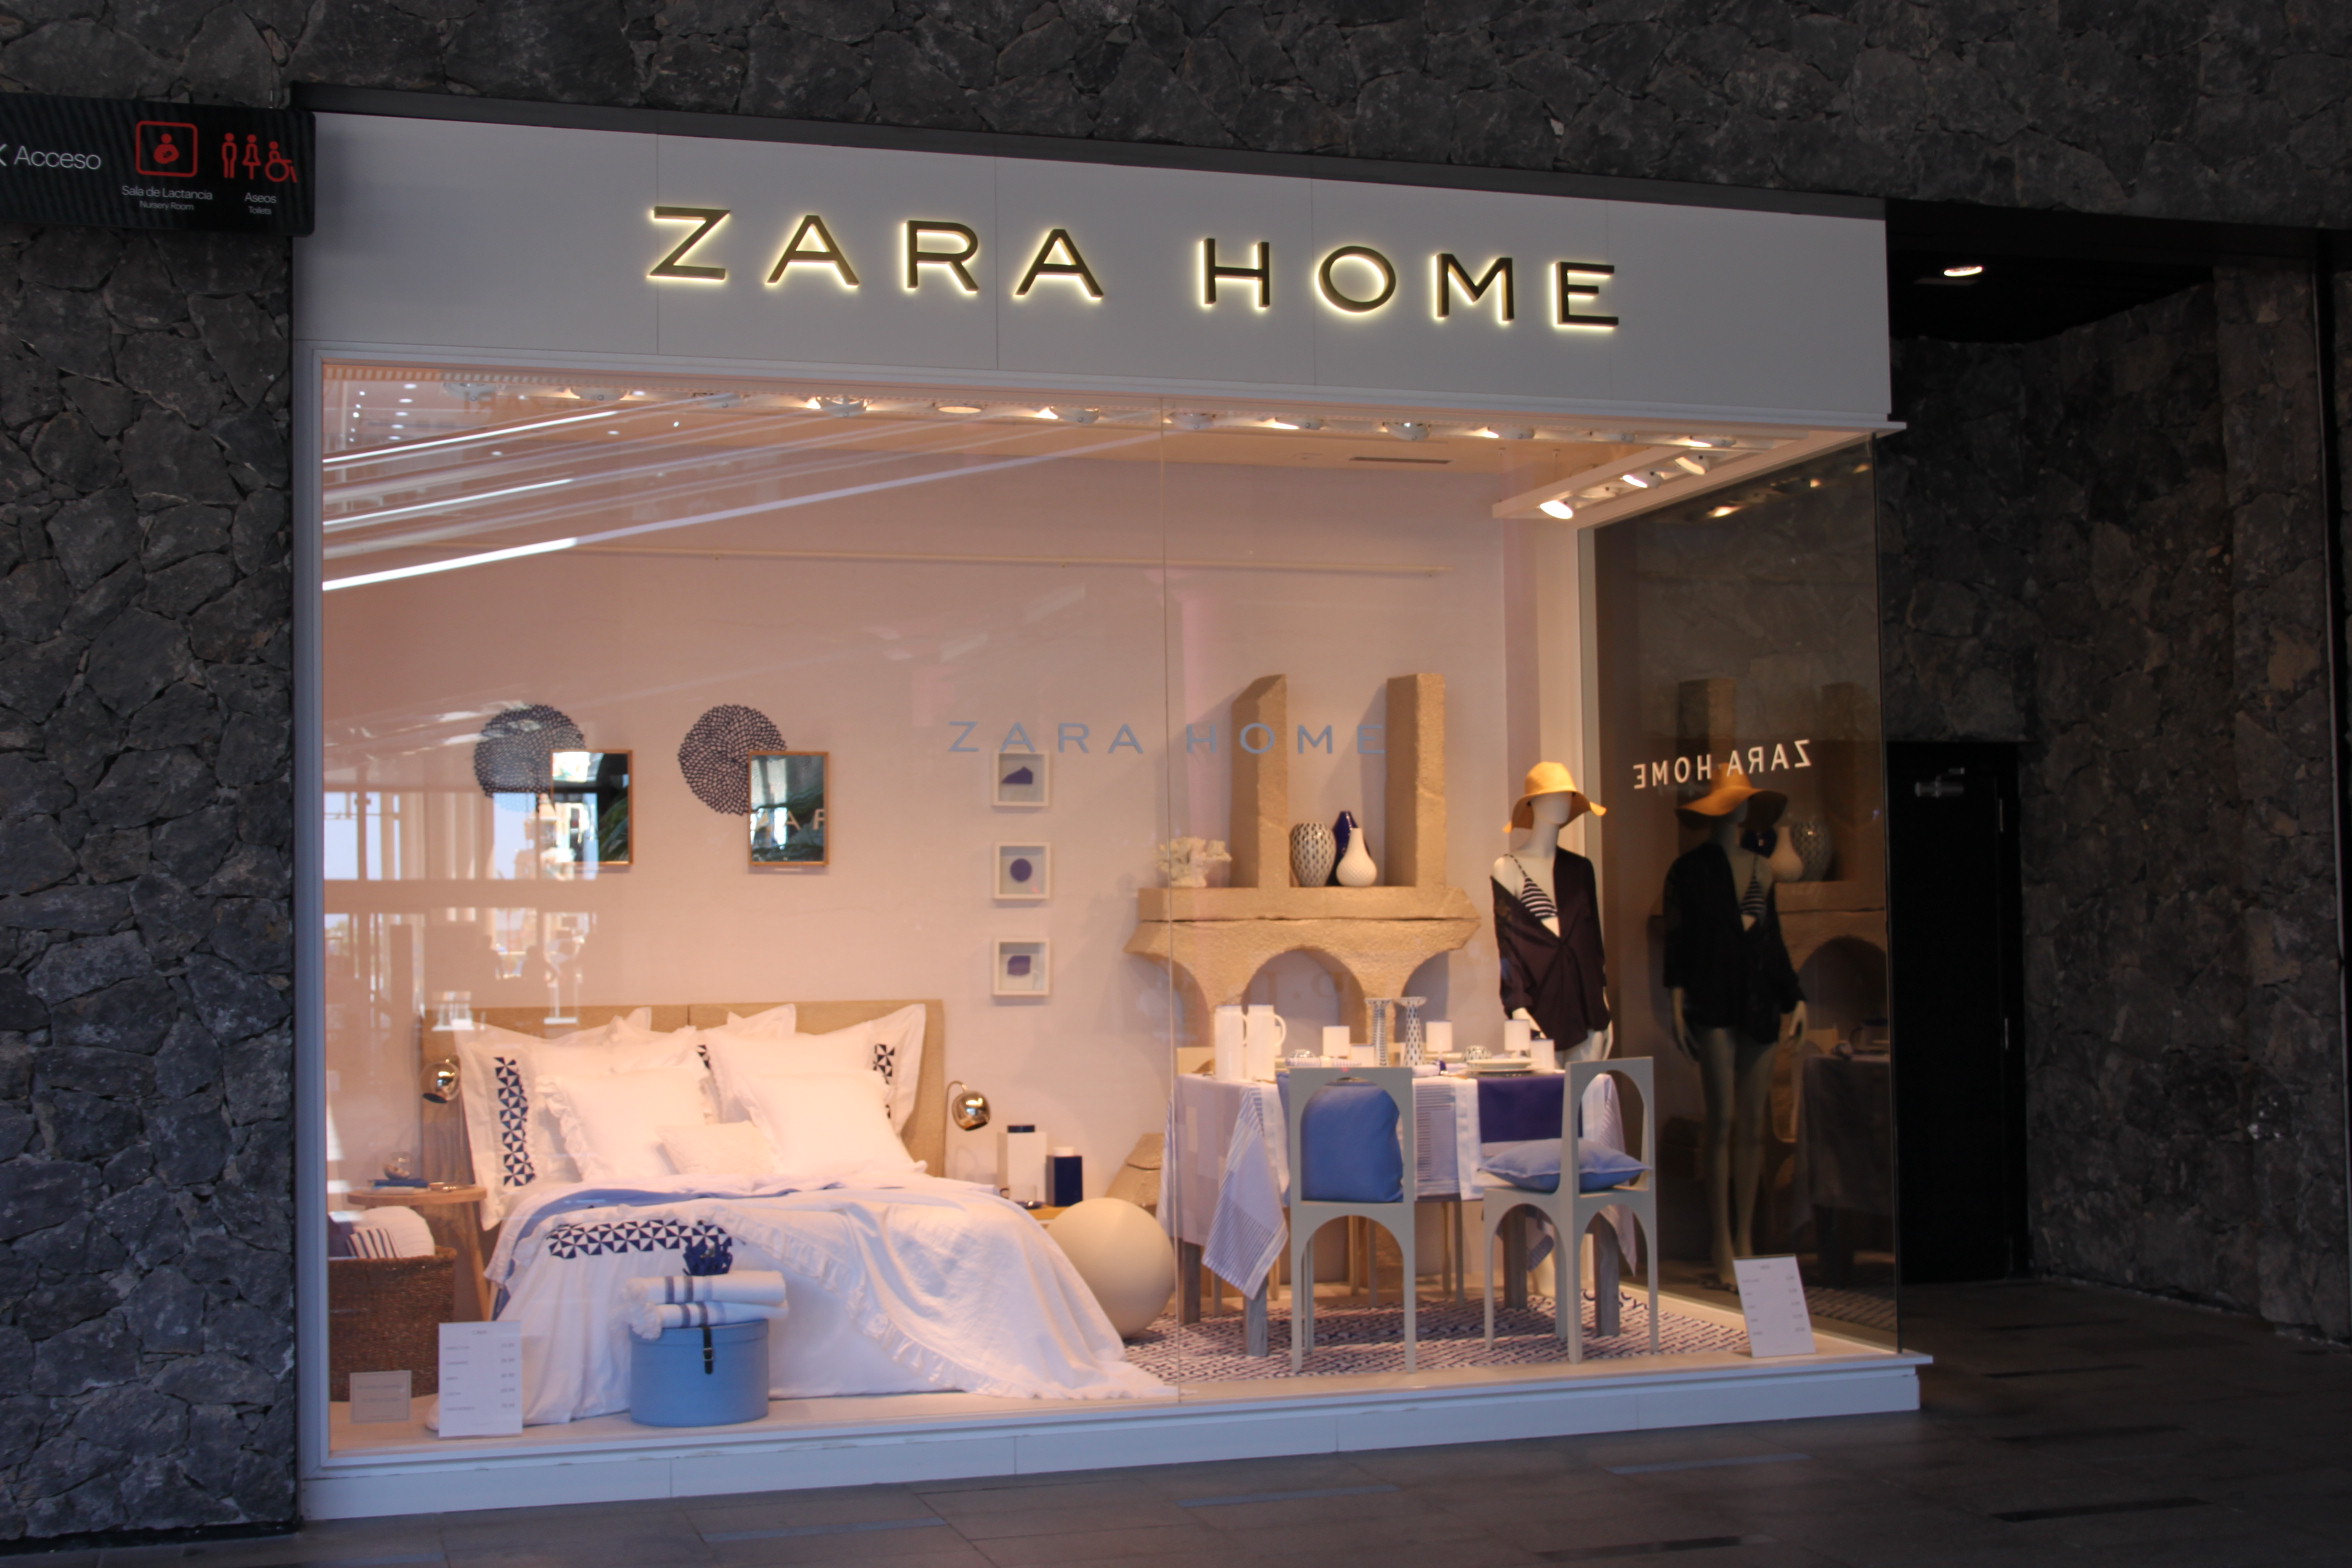 Zara Home - Centro Comercial Siam Mall Tenerife